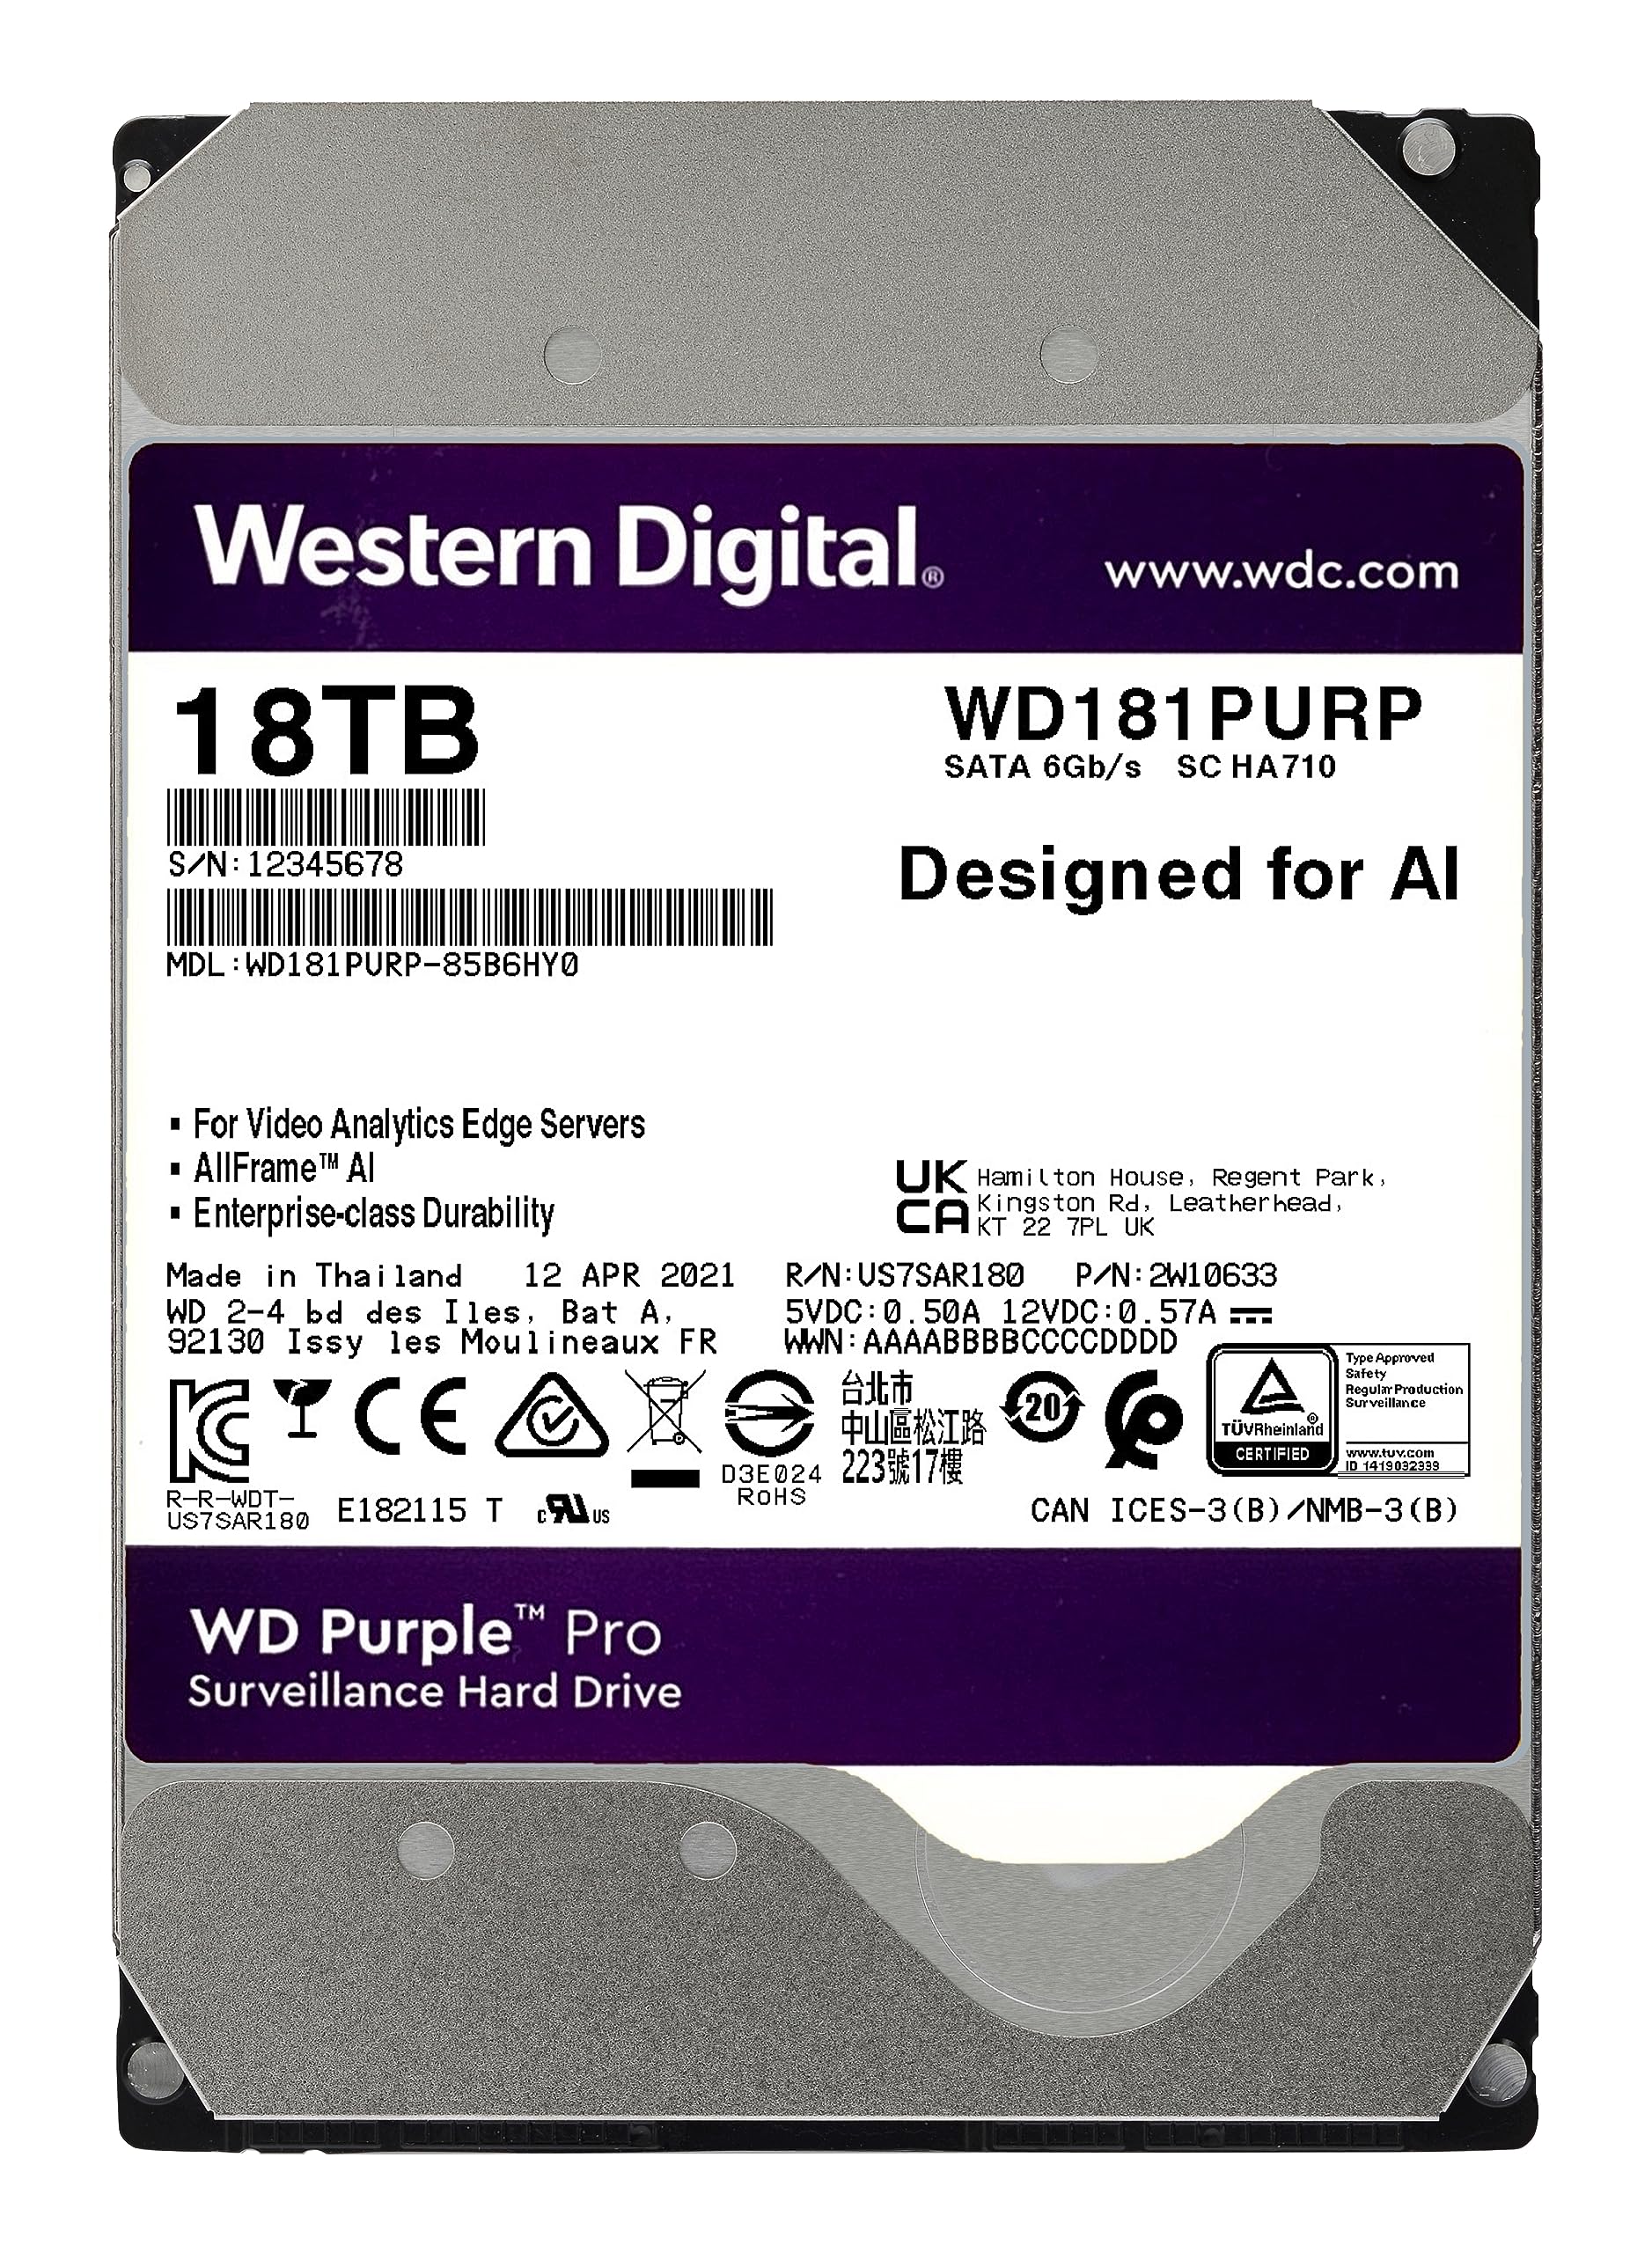 Western Digital 18TB WD Purple Pro Surveillance Internal Hard Drive HDD - SATA 6 Gb/s, 512 MB Cache, 3.5" - WD181PURP